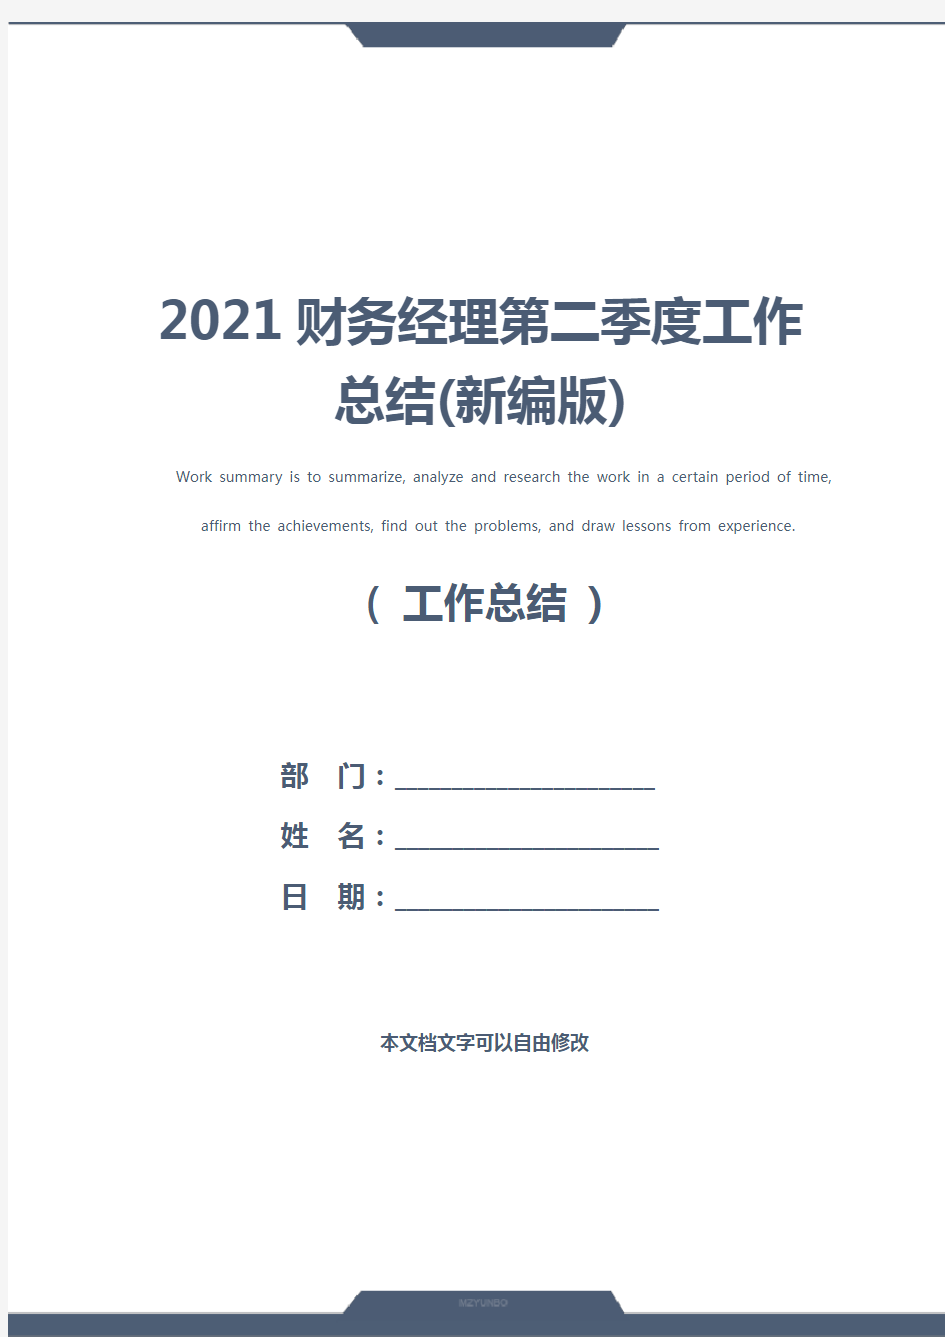 2021财务经理第二季度工作总结(新编版)